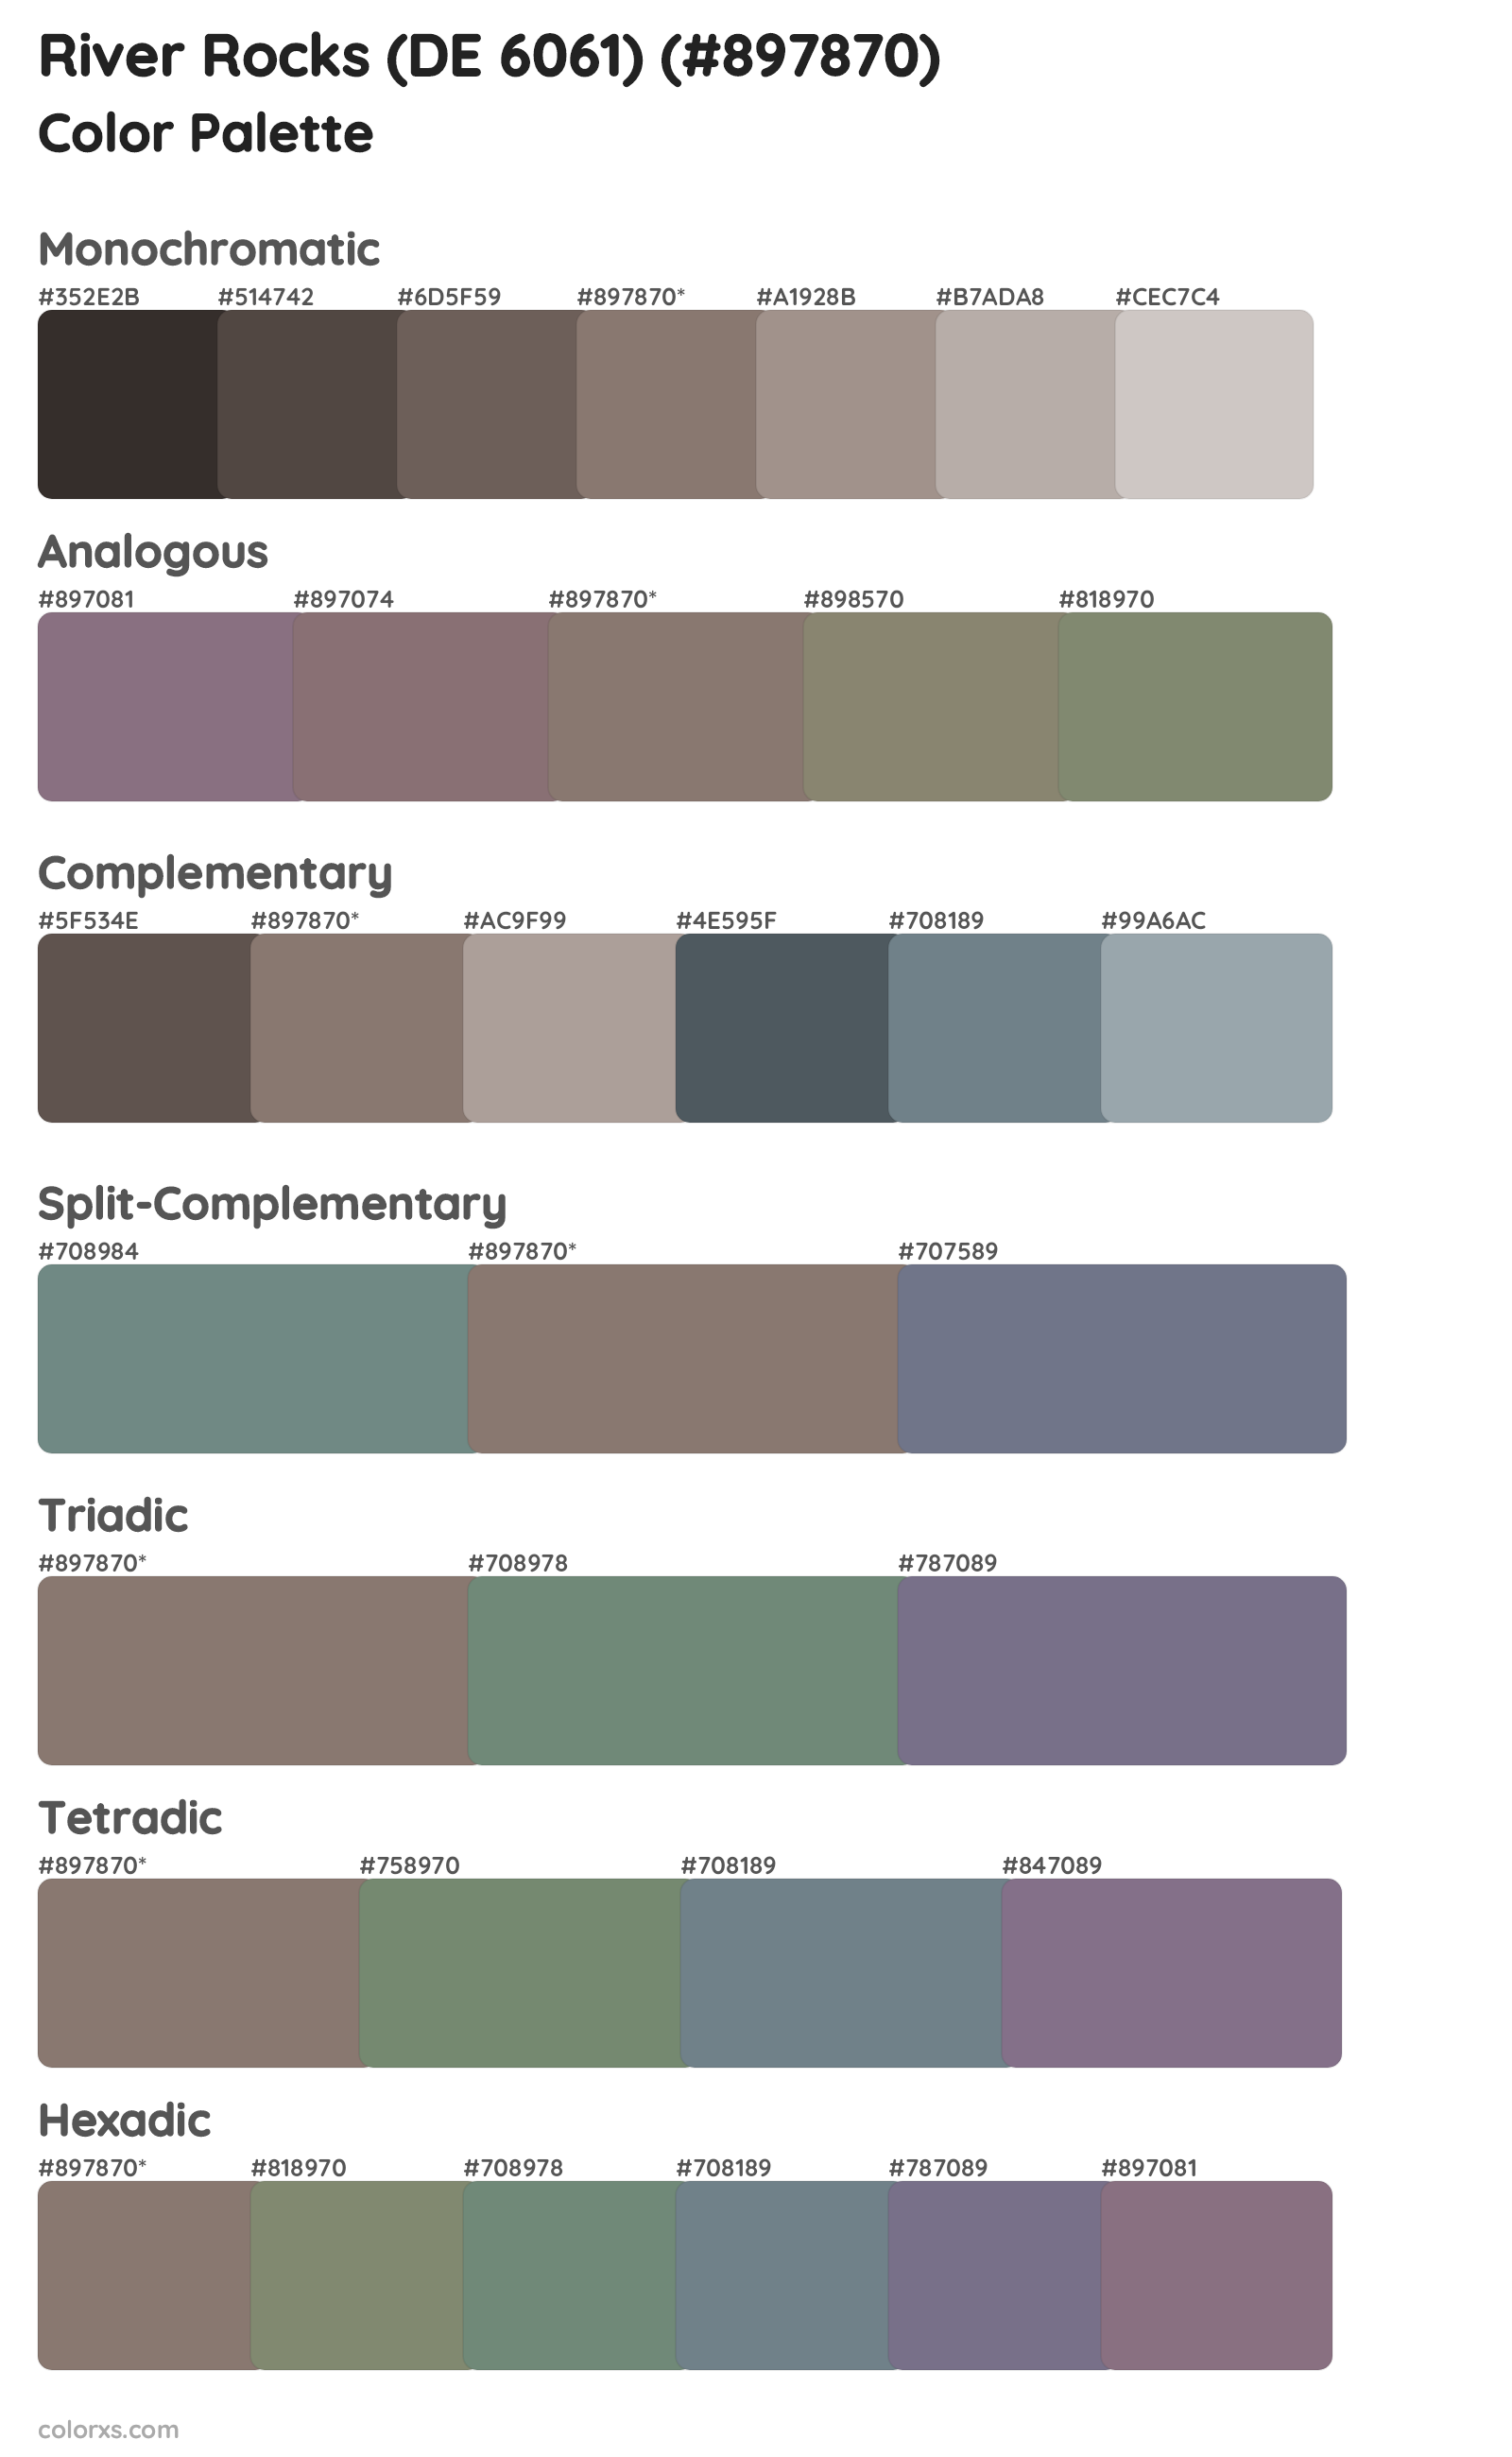 River Rocks (DE 6061) Color Scheme Palettes